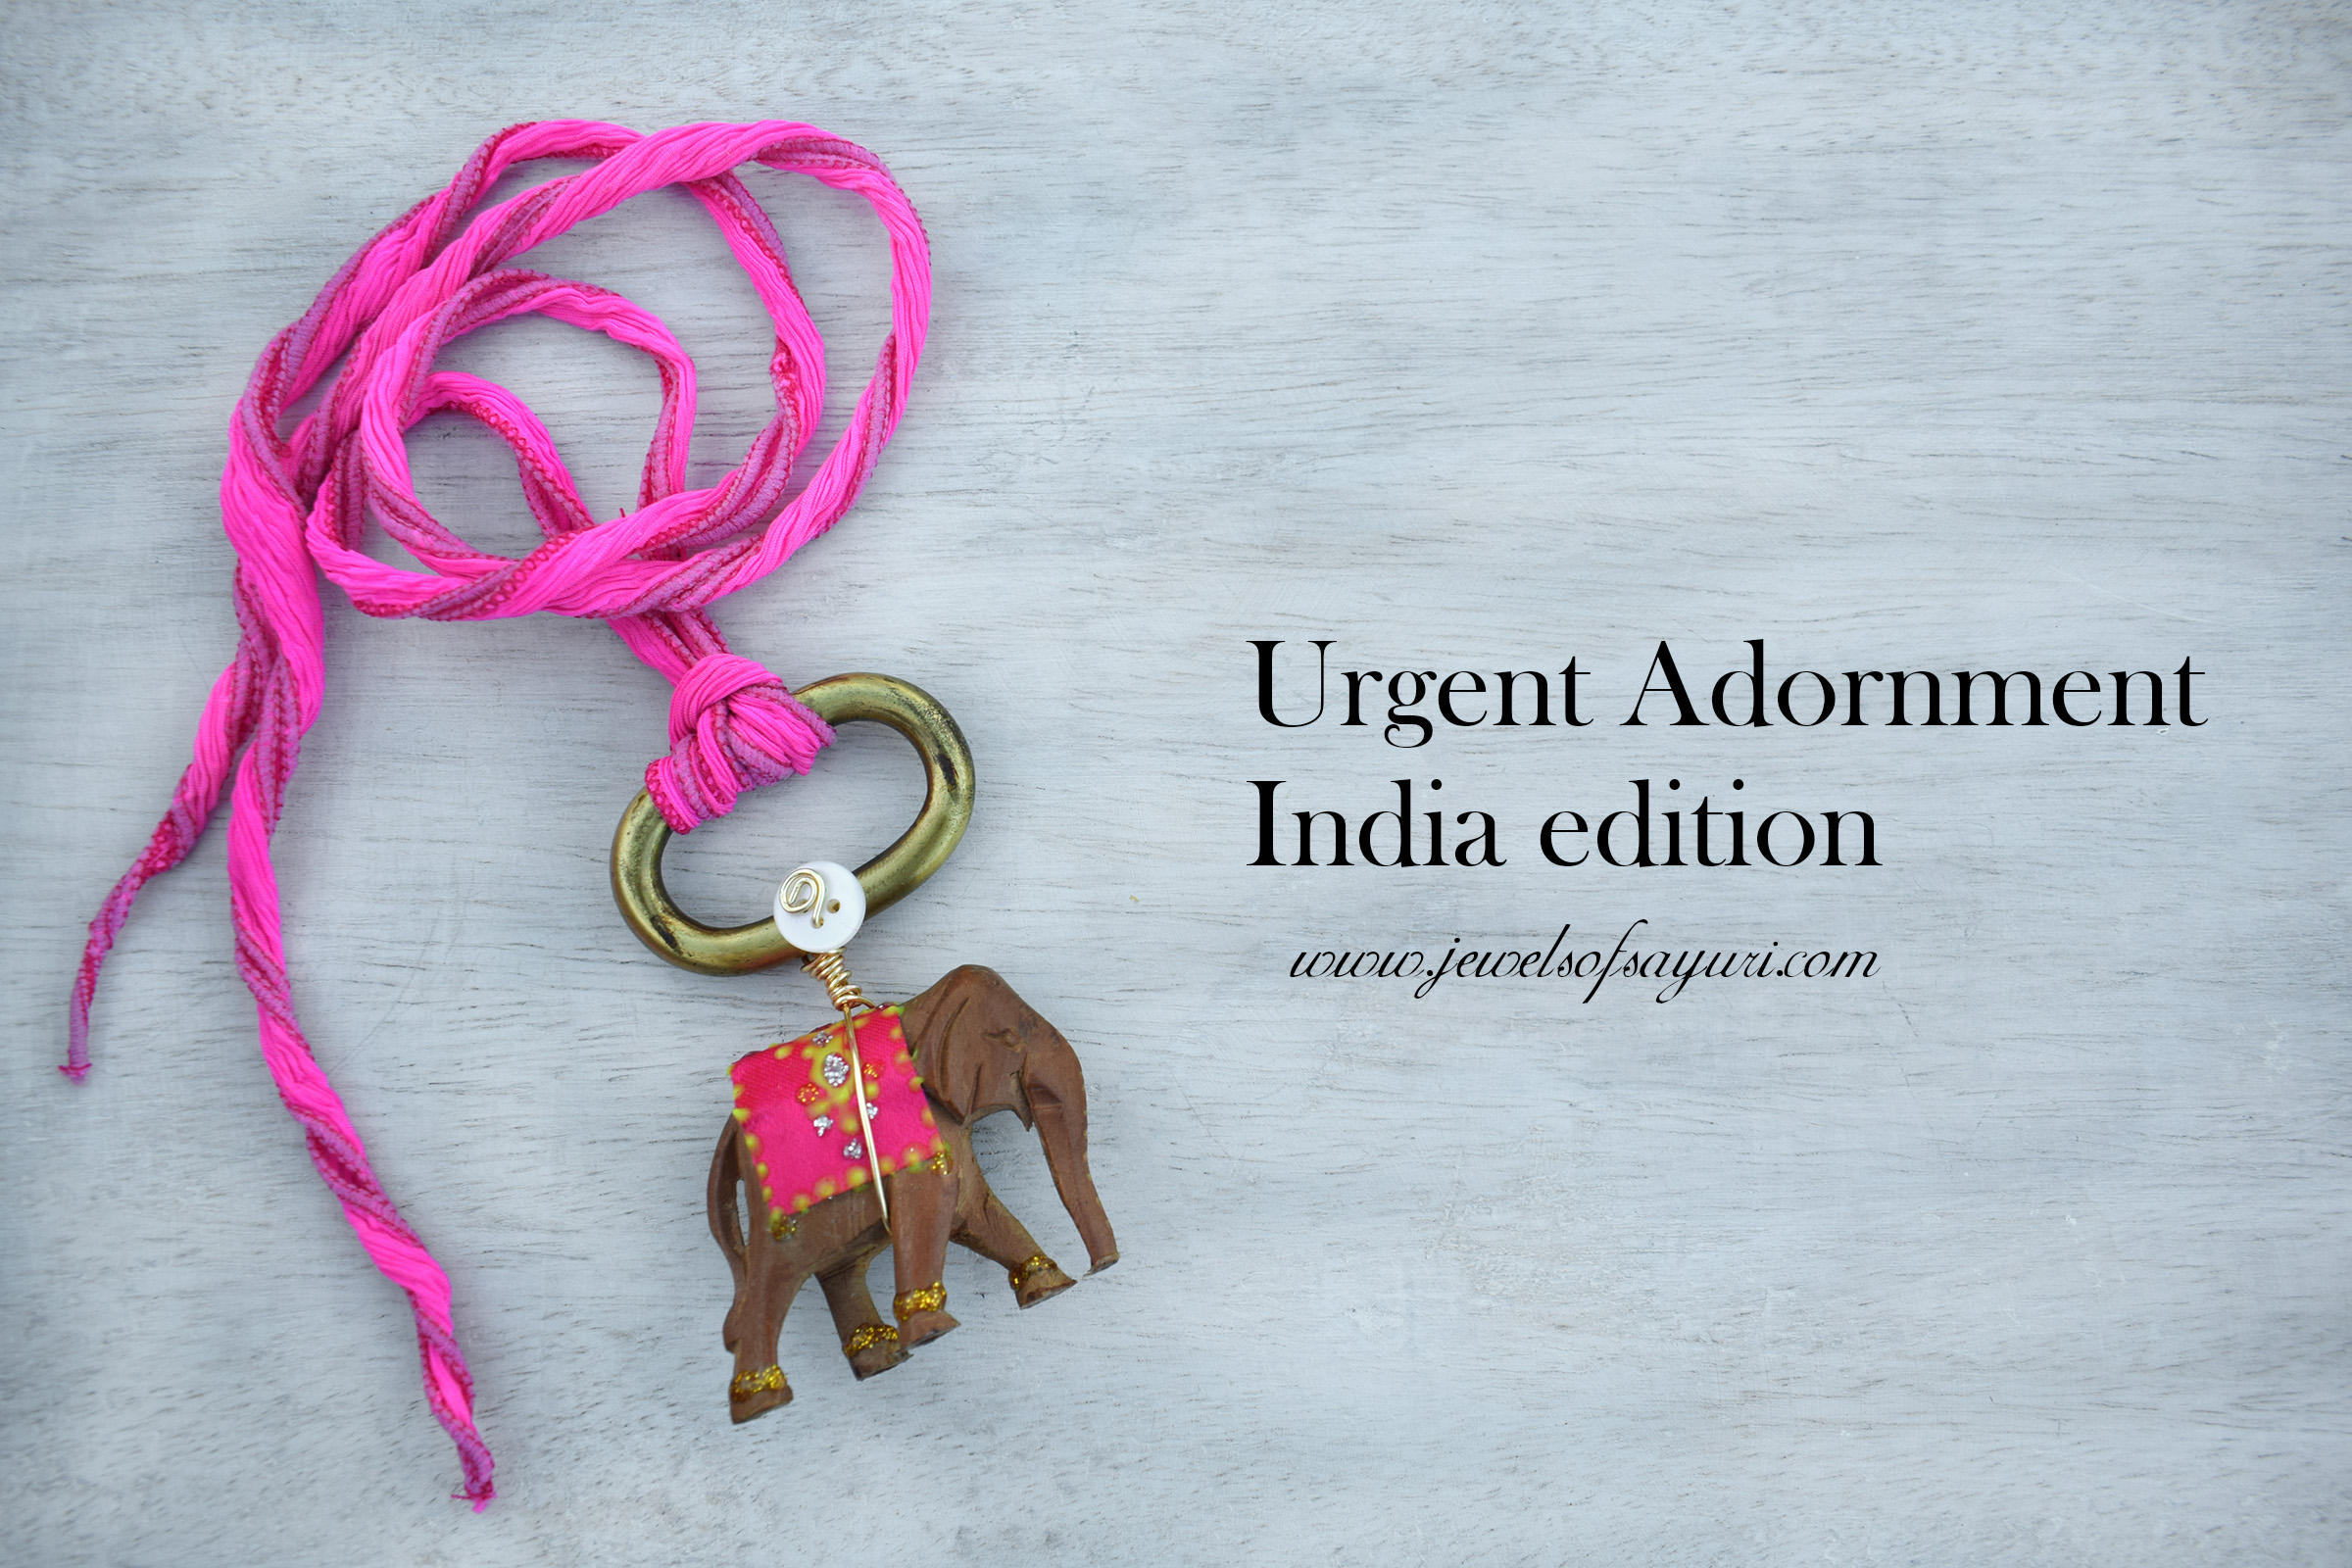 Urgent Adornment India edition